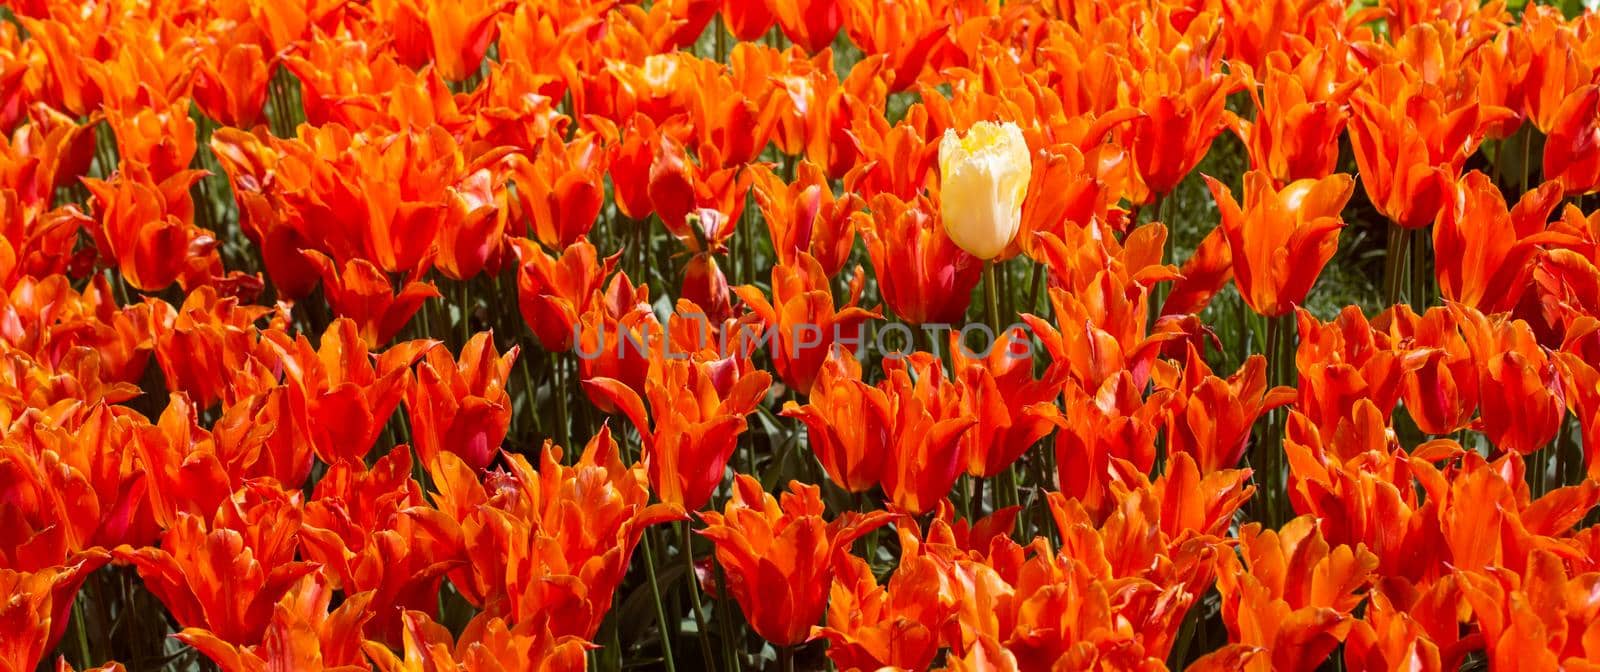 Blooming tulip flowers in spring as  floral background by berkay